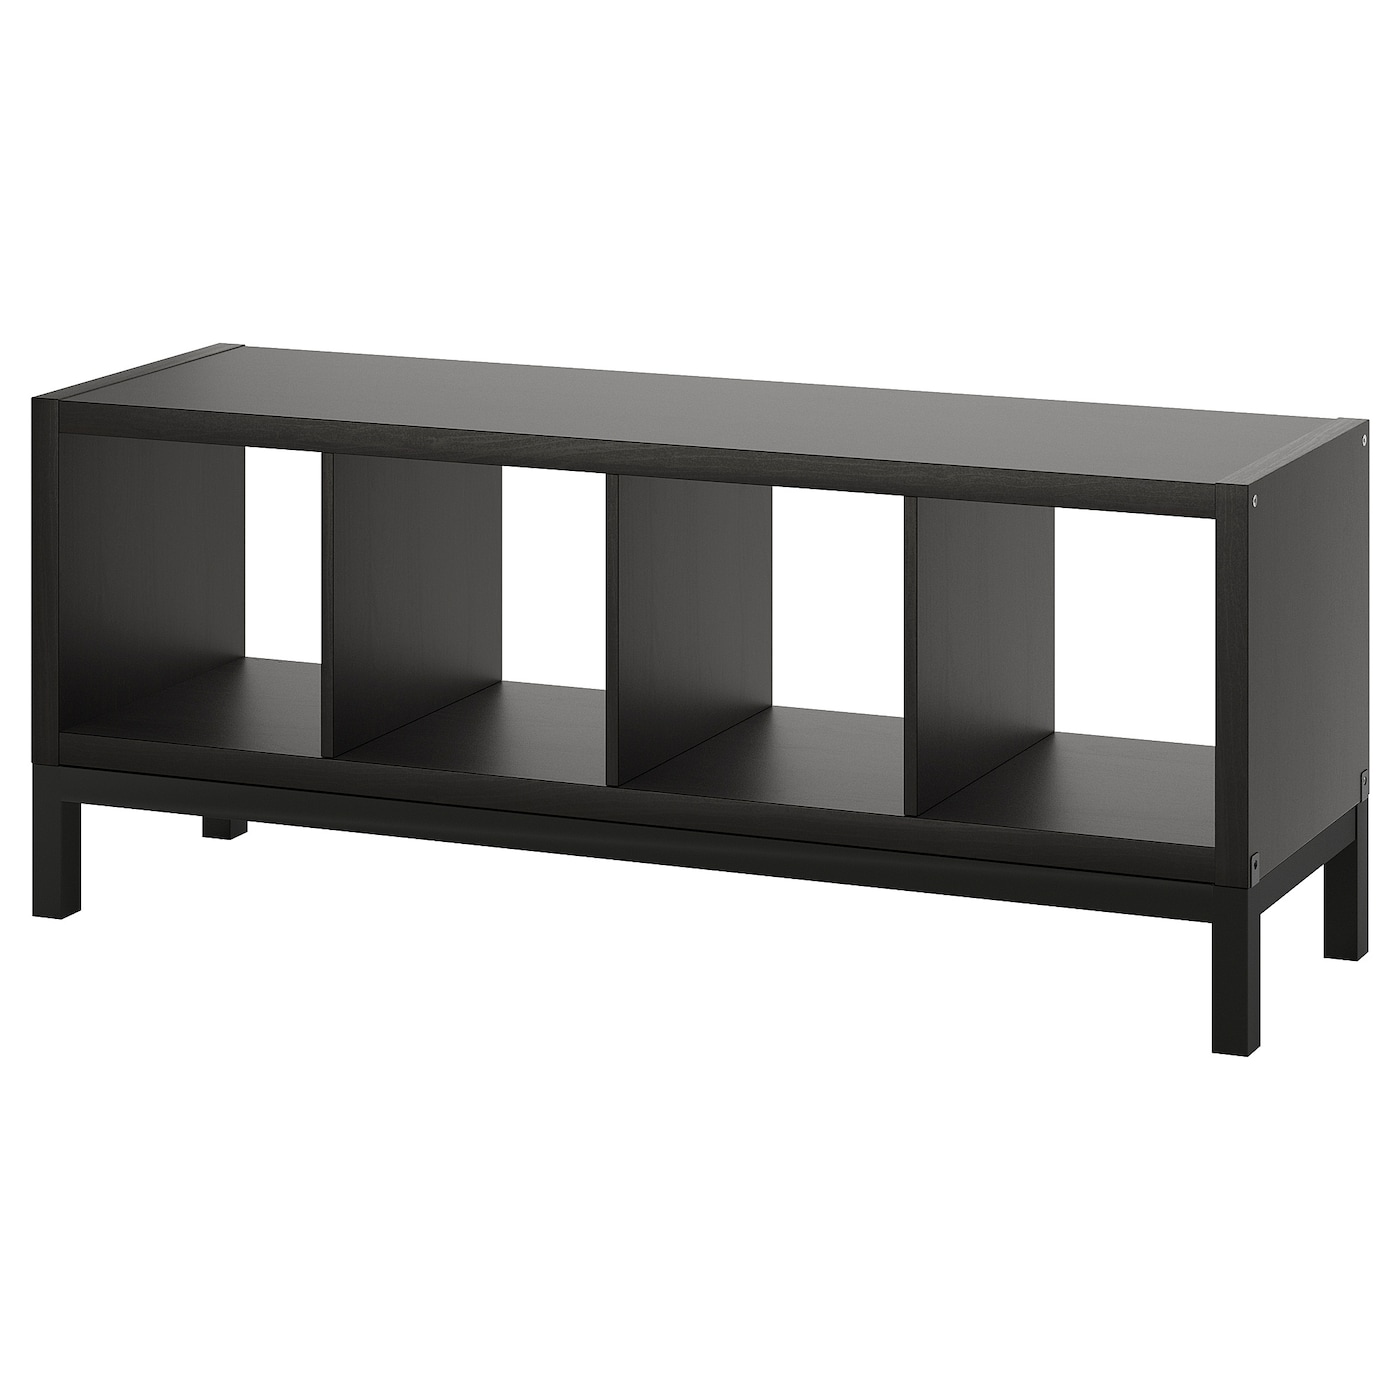 Стеллаж - IKEA KALLAX, 147х39х59 см, черно-коричневый/черный, КАЛЛАКС ИКЕА